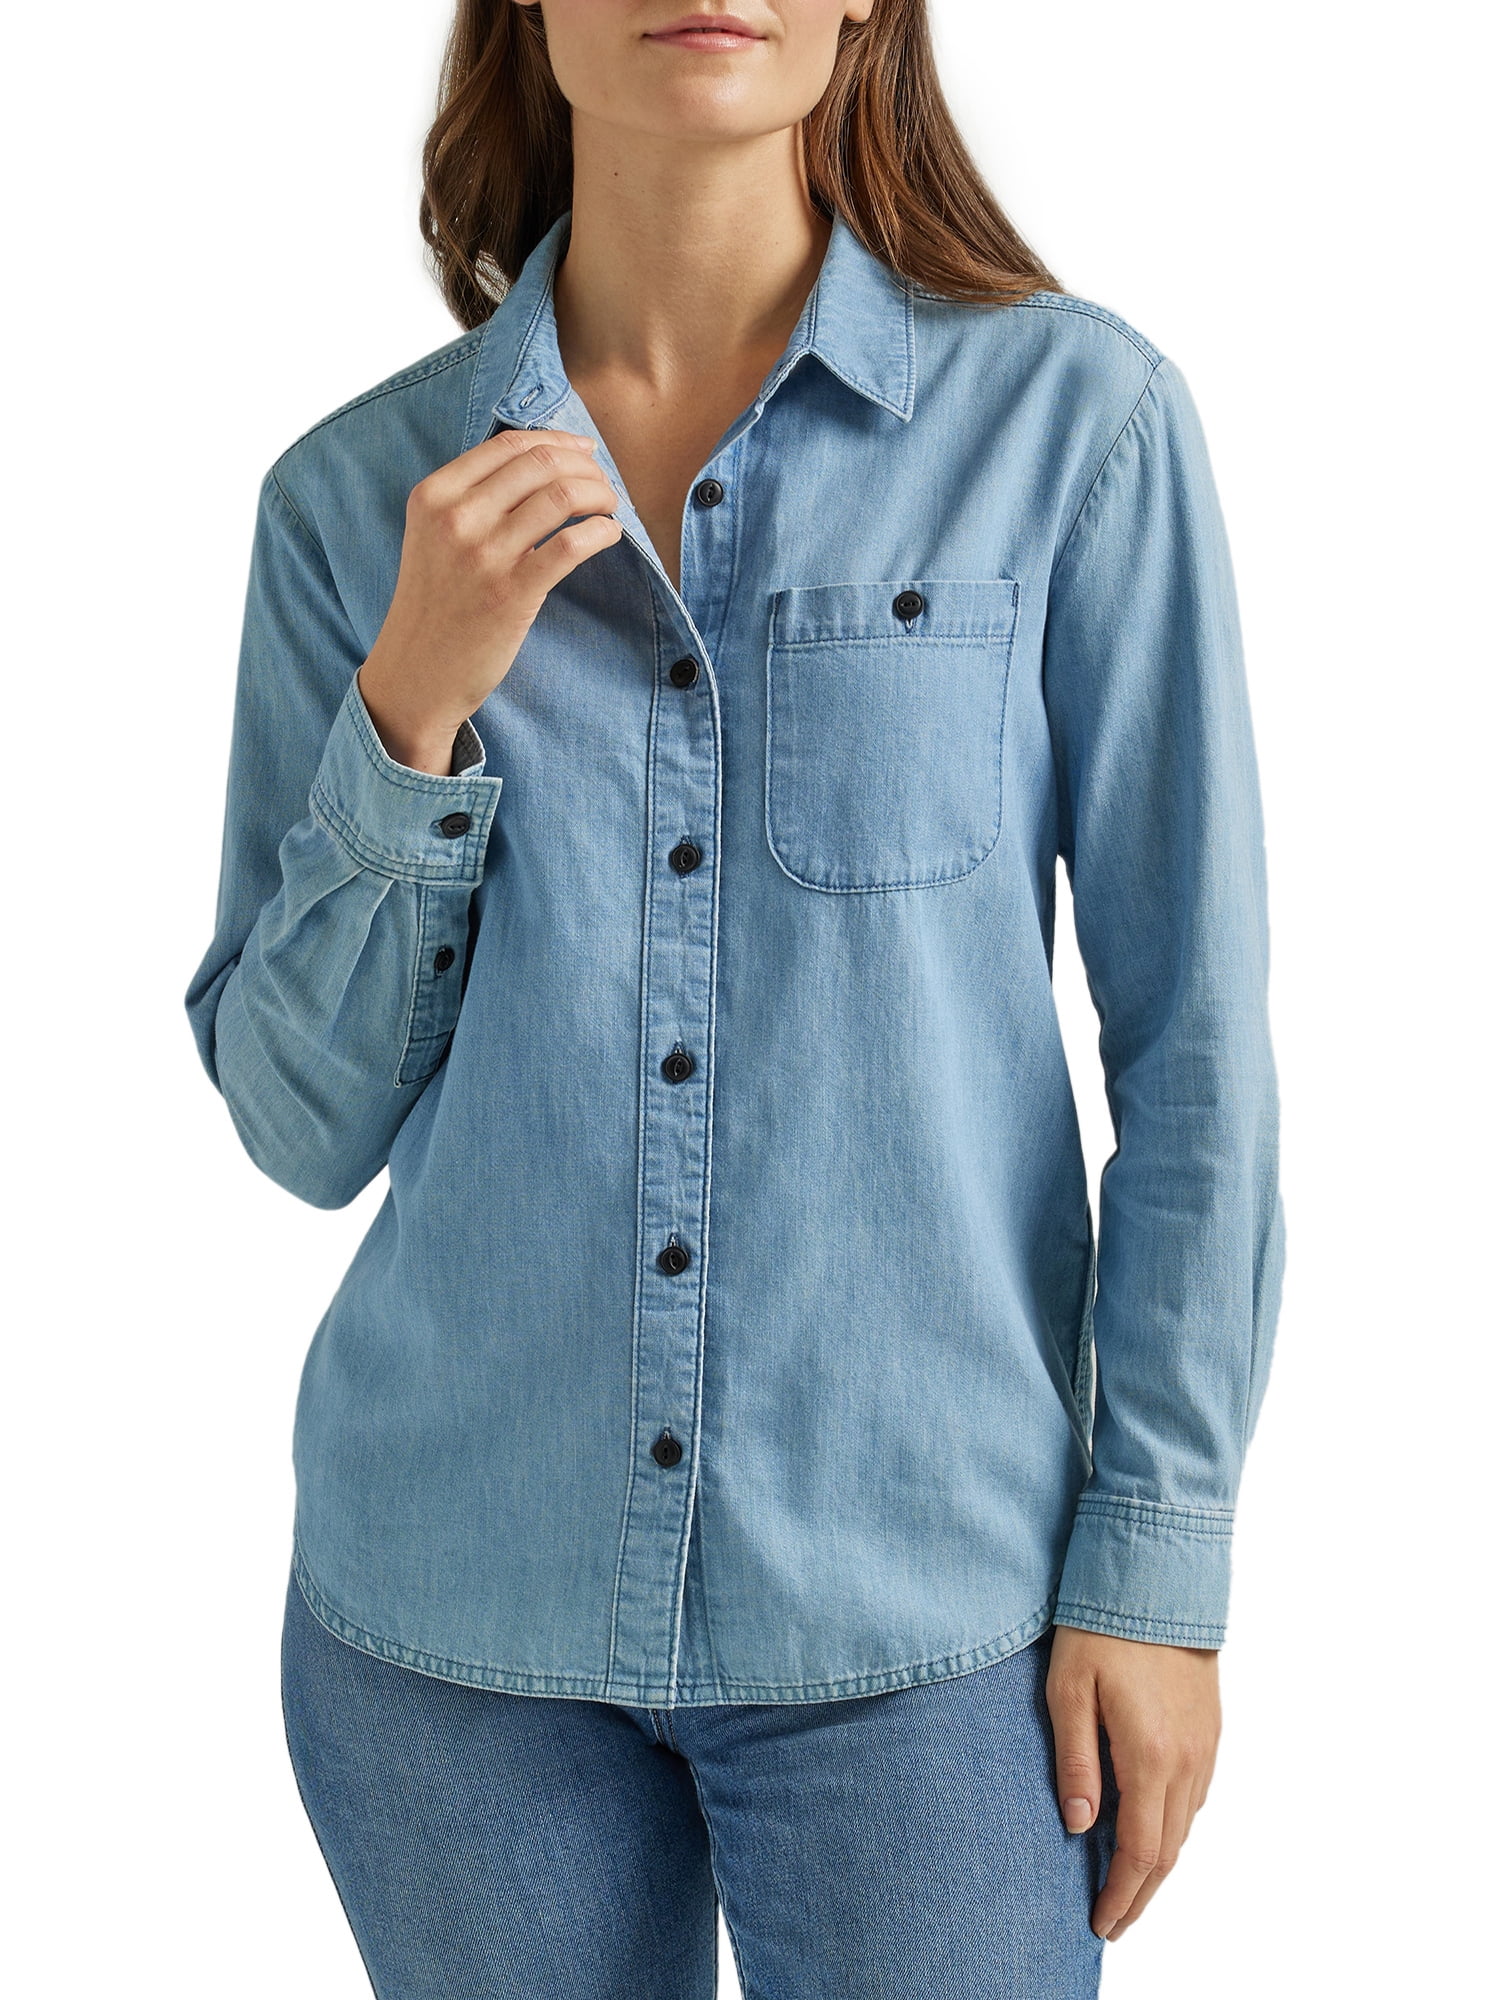 discount 88% Blue M Springfield Shirt WOMEN FASHION Shirts & T-shirts Jean 